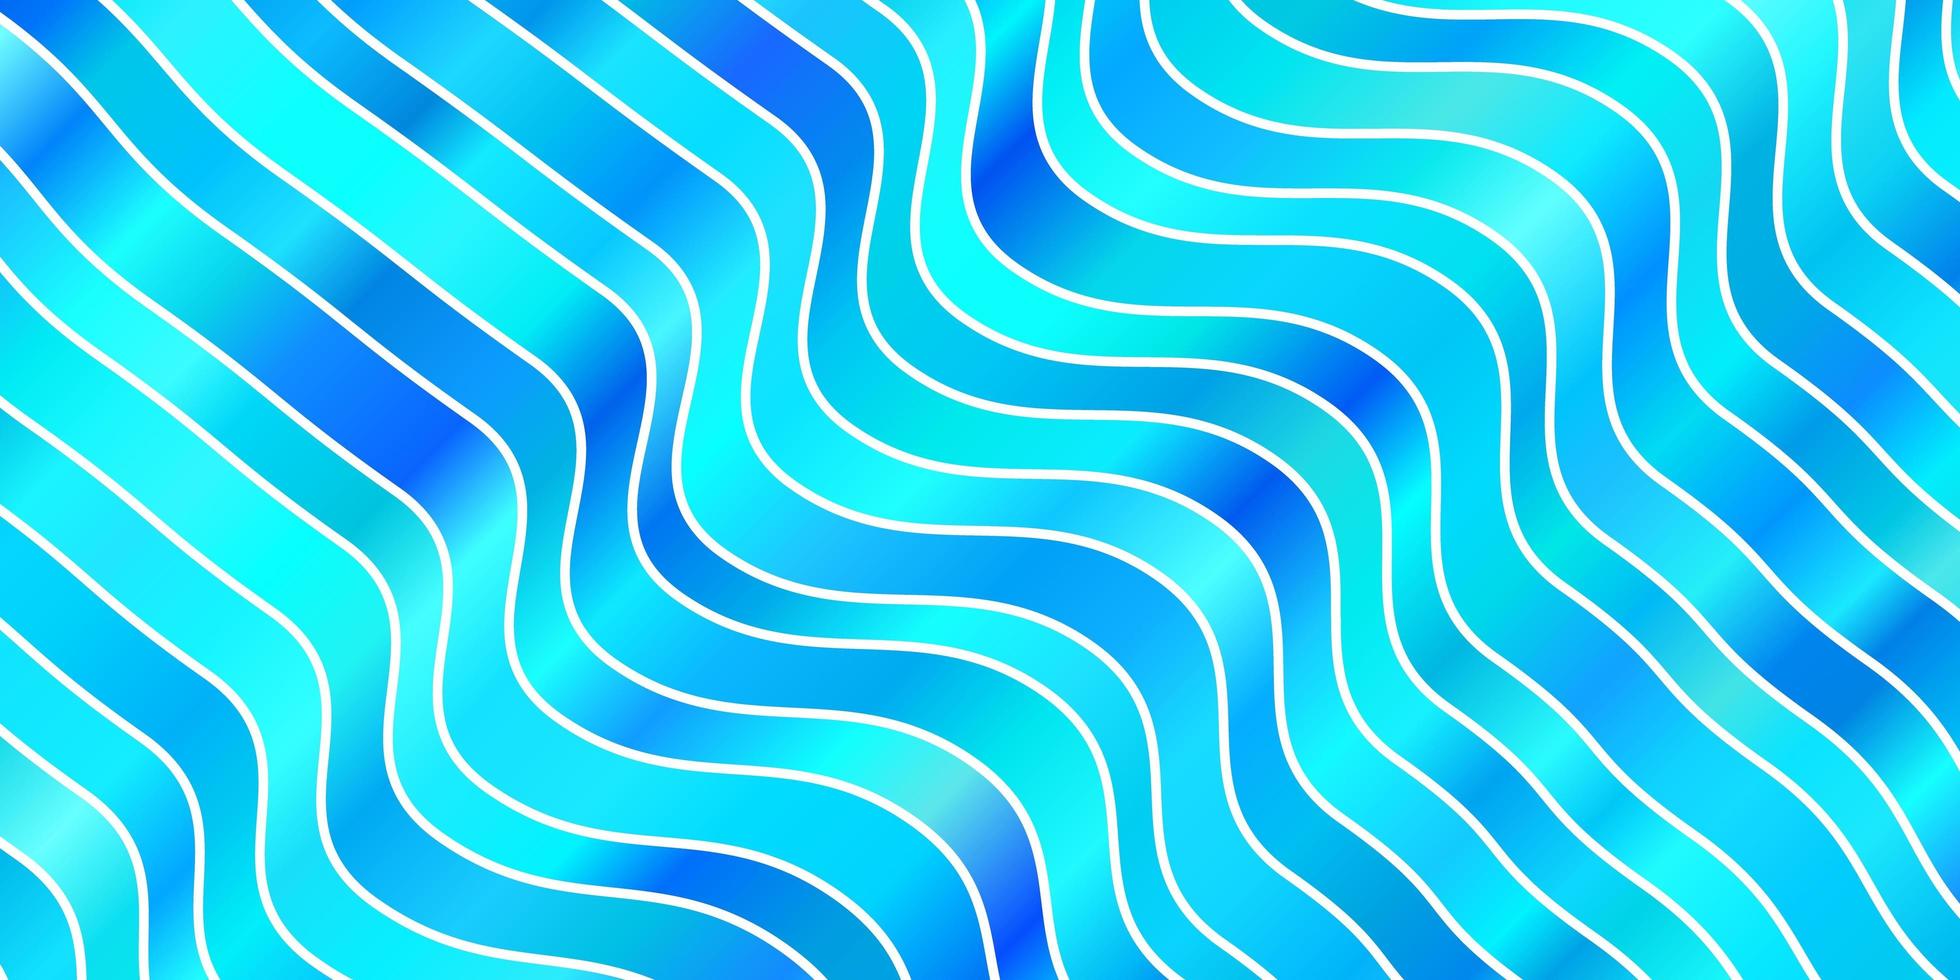 Fondo de vector azul claro con líneas dobladas